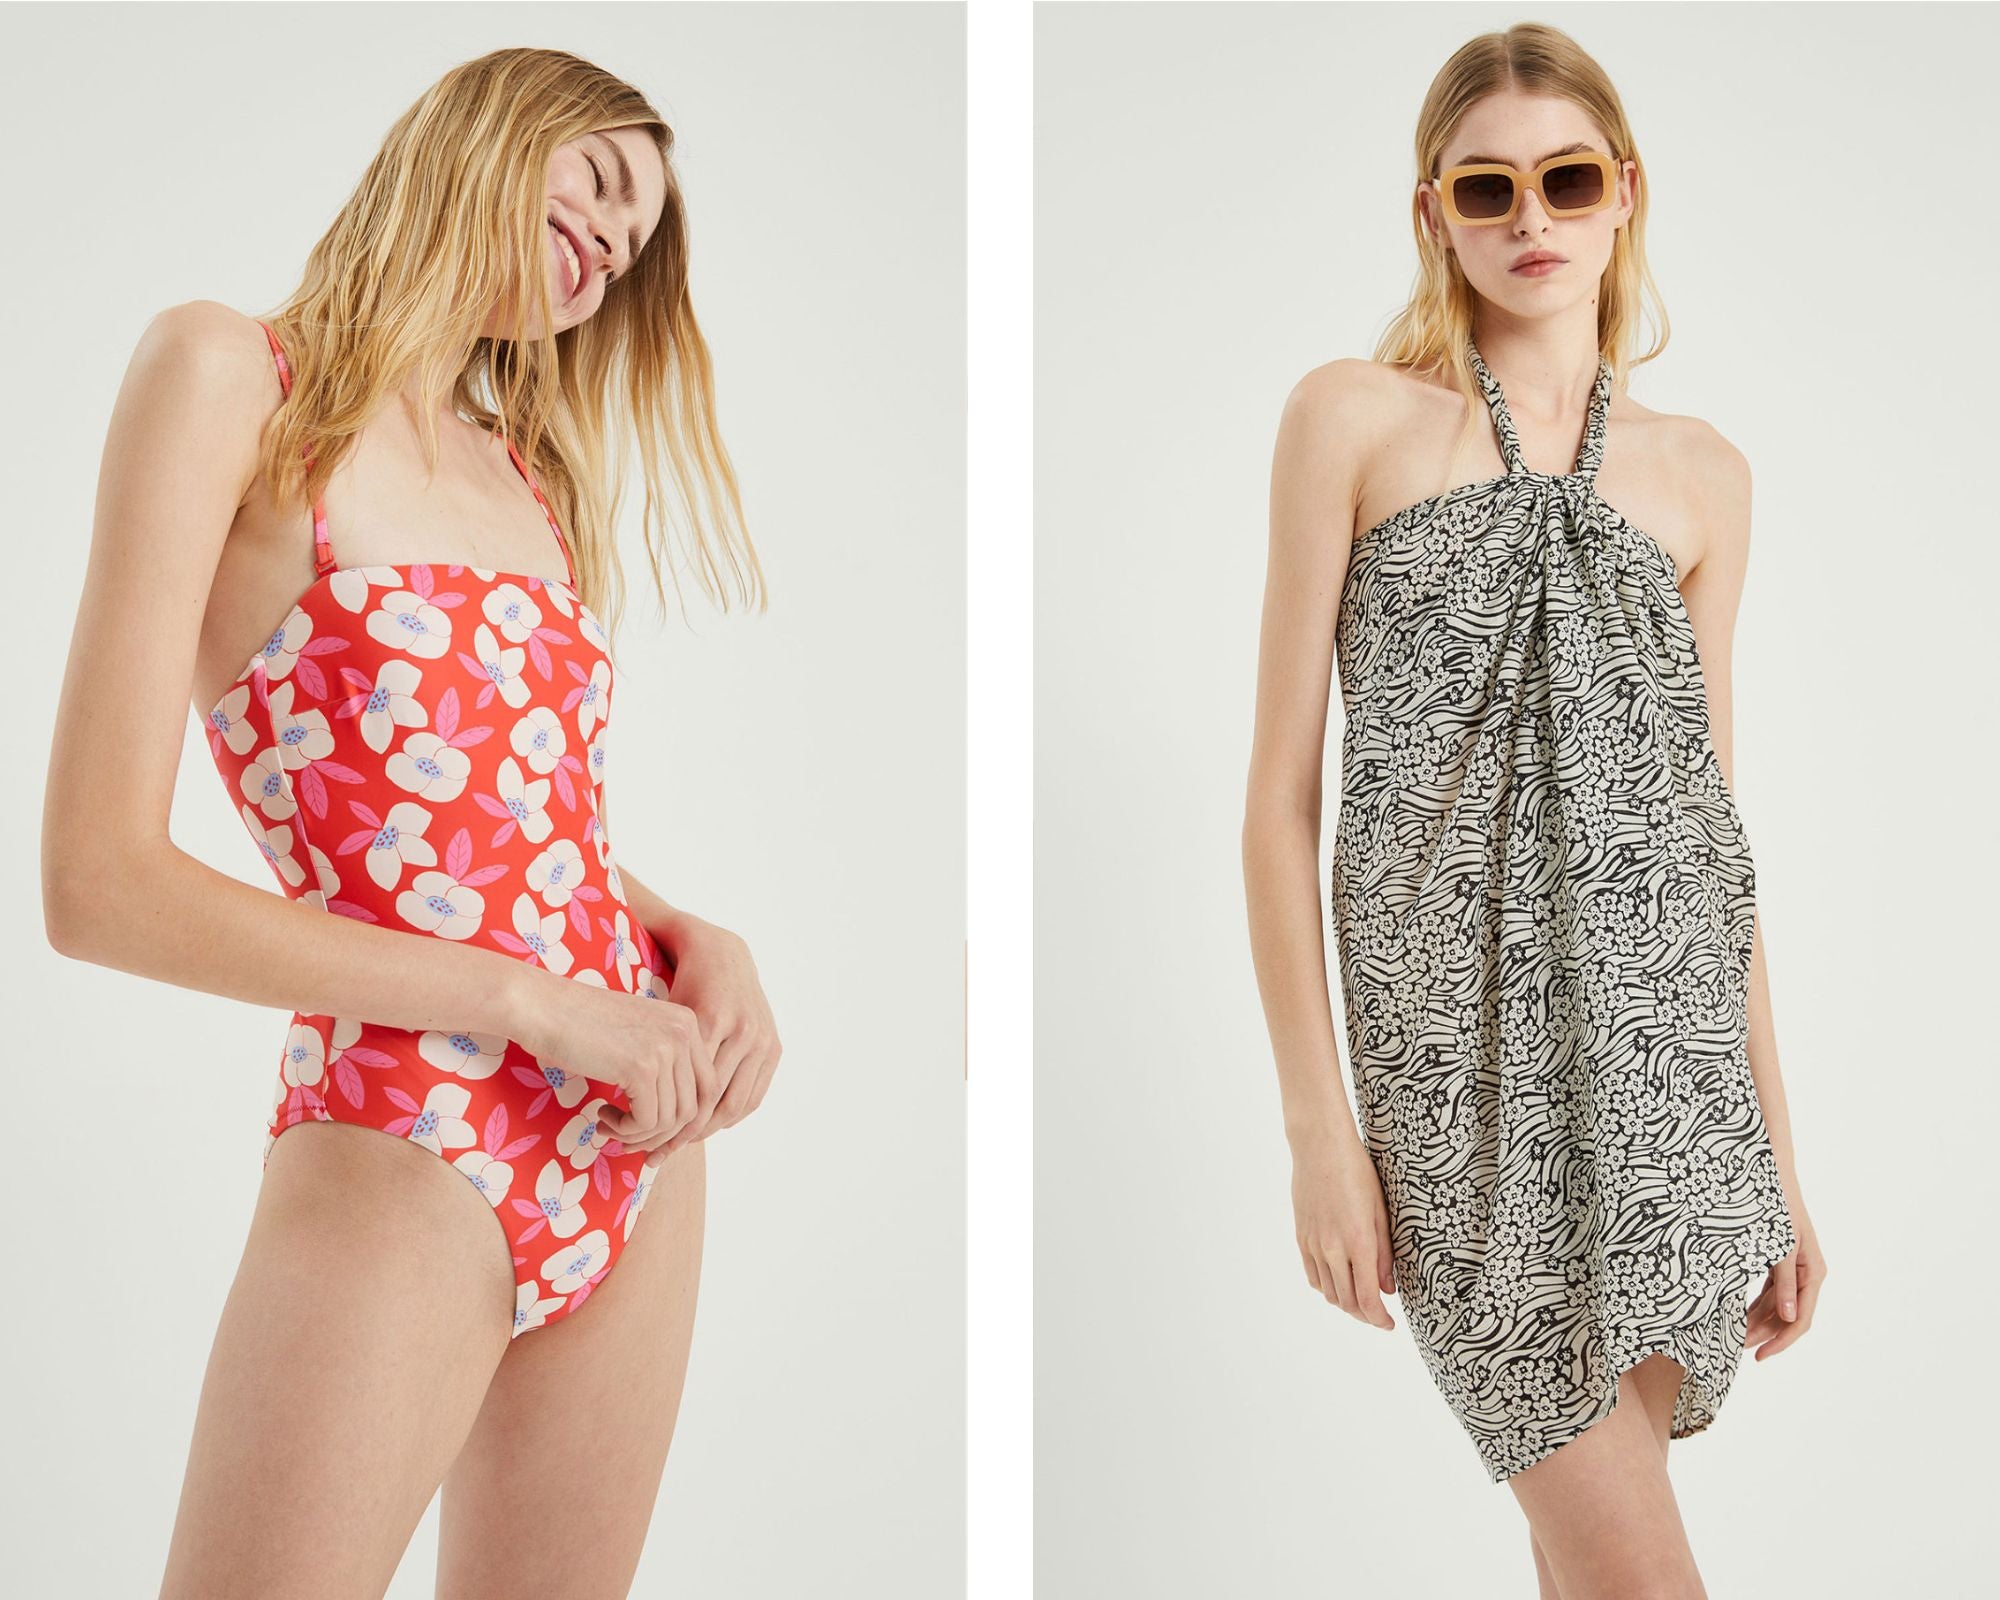 Dos propuestas de la colección de beachwear de Compañía Fantástica.